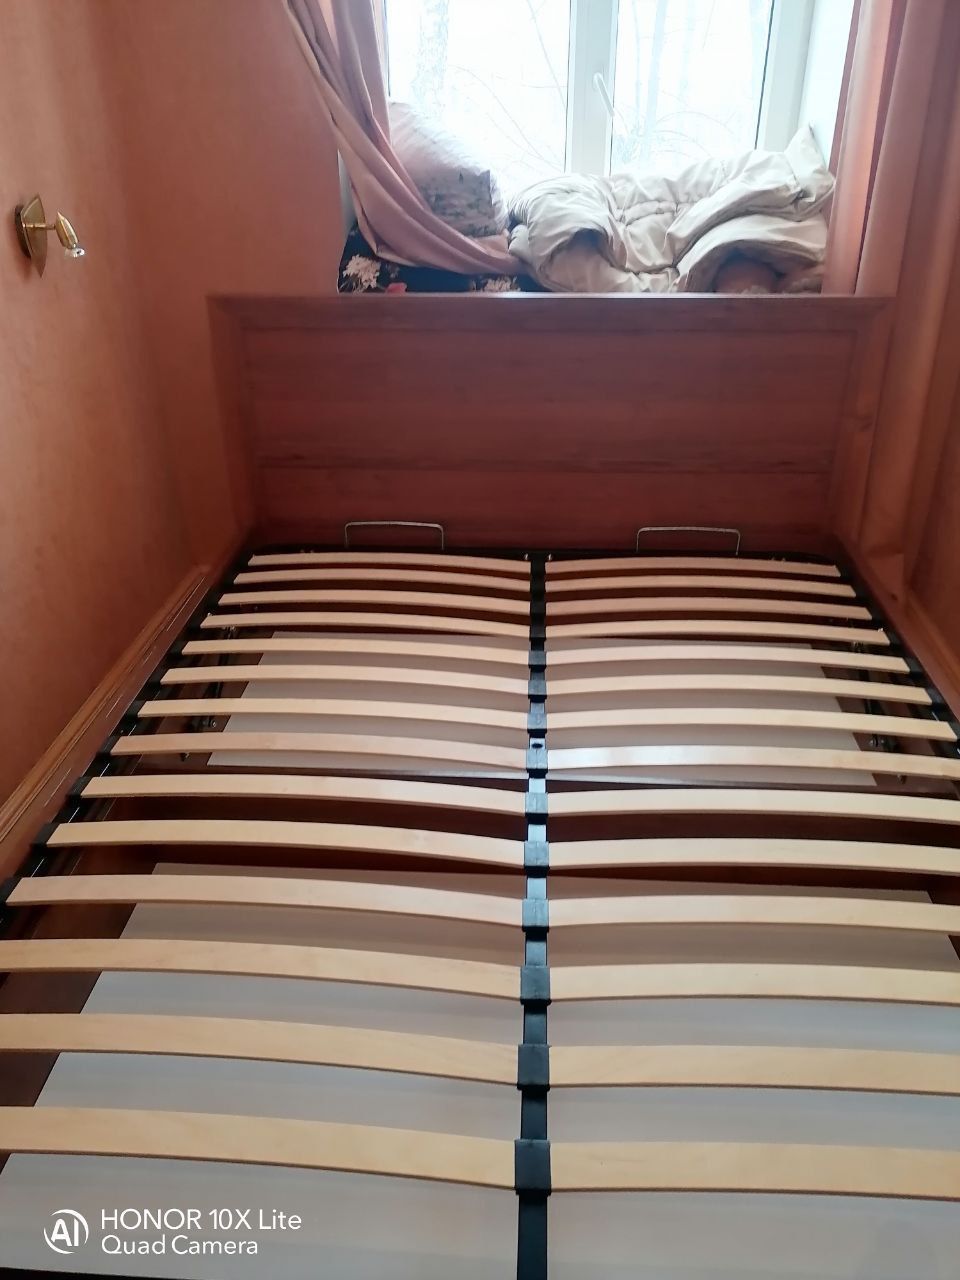 Полутораспальная кровать "Мальта" 120 х 200 с подъемным механизмом цвет сонома